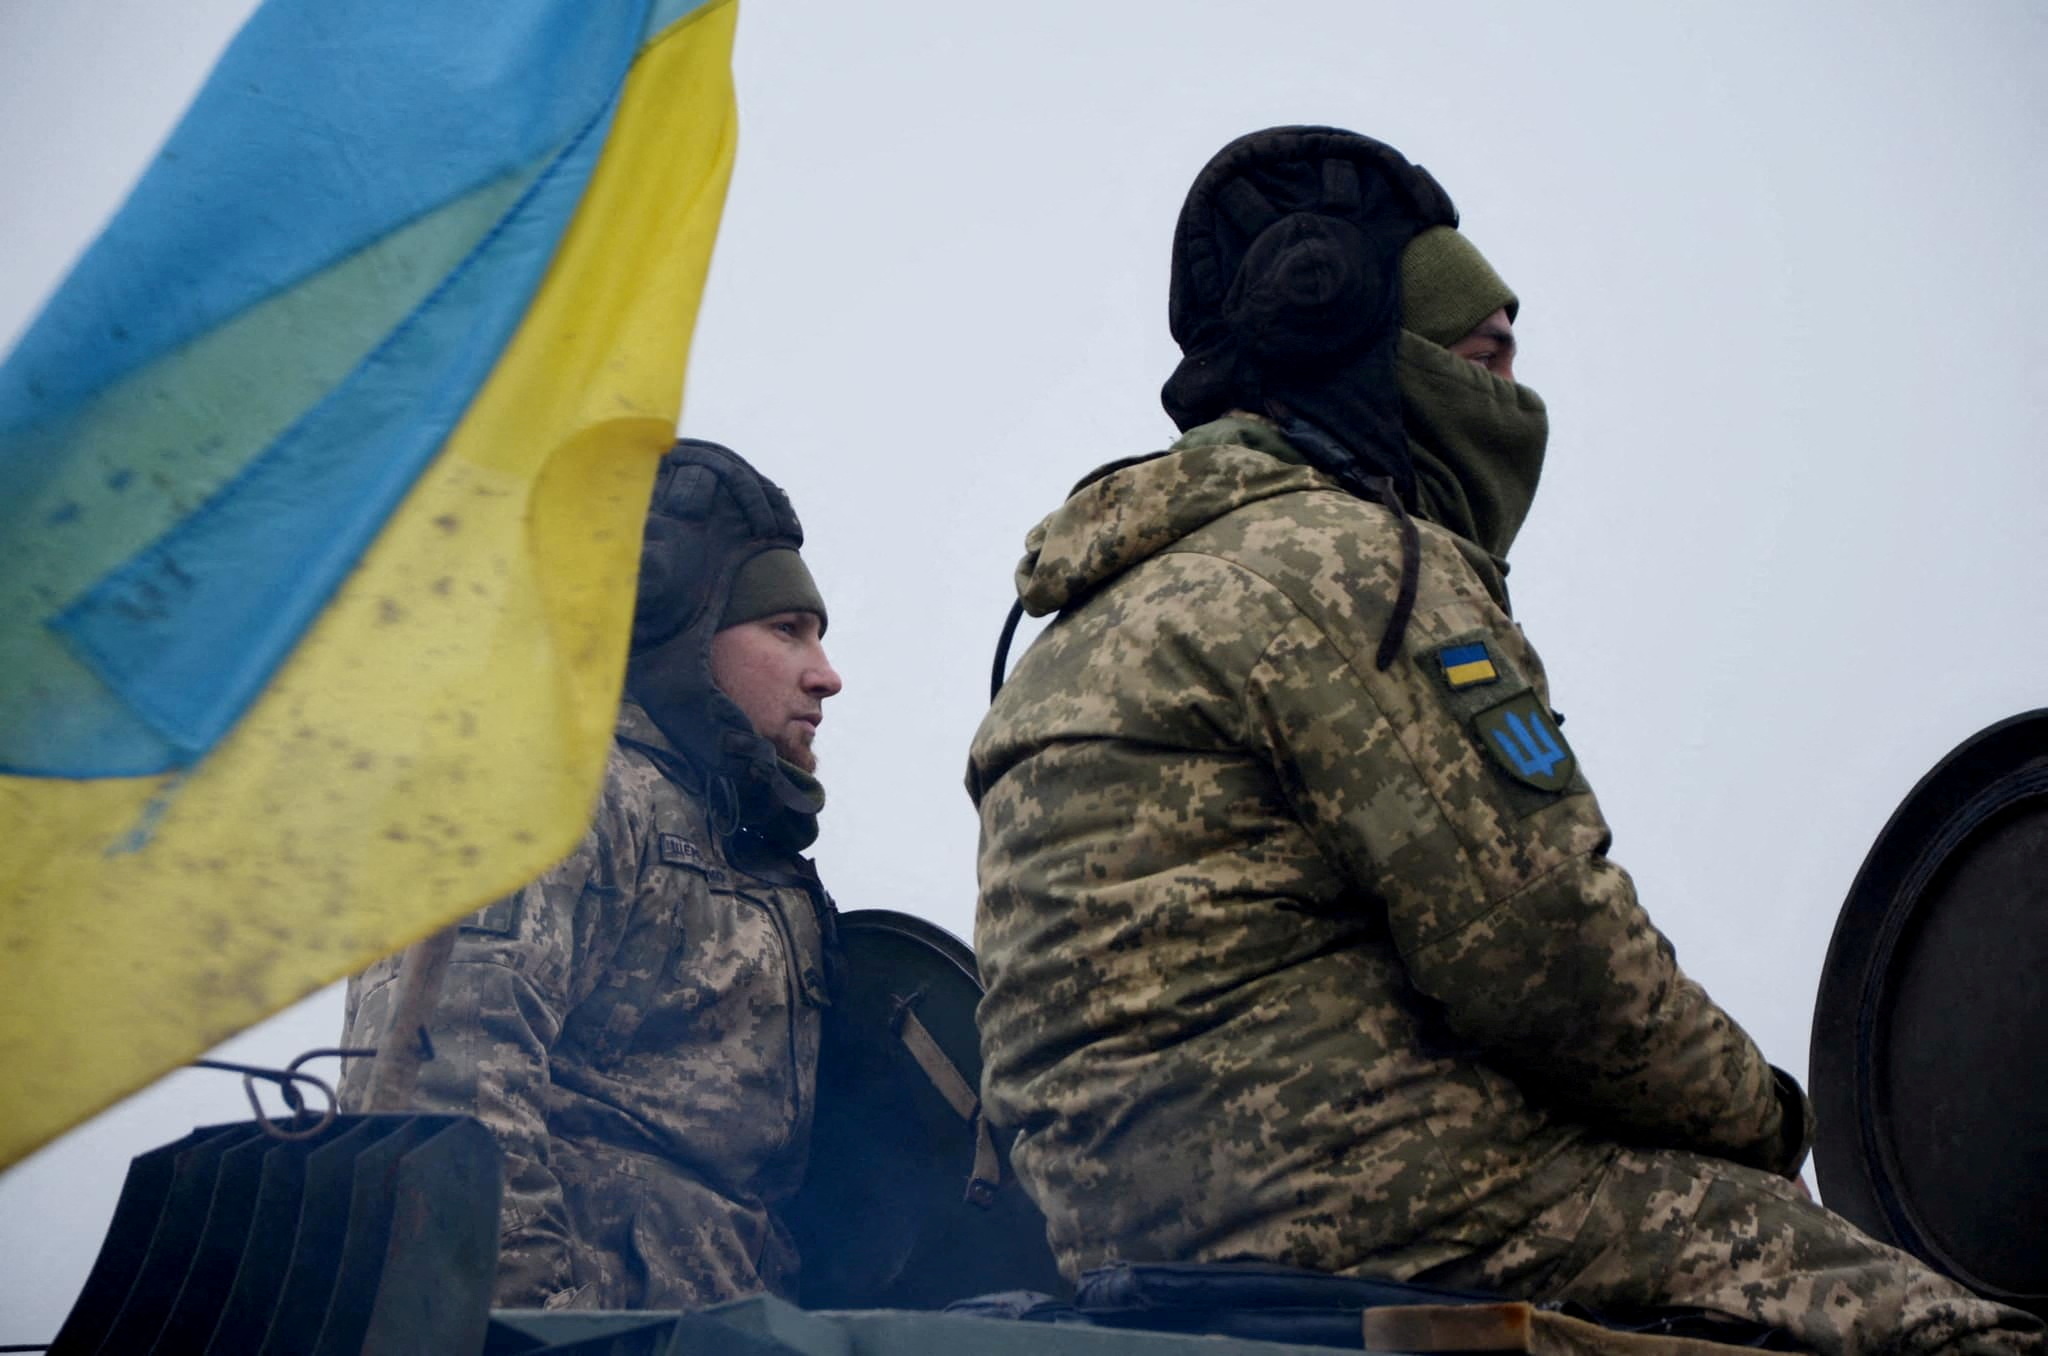 Dois soldados sentam-se perto de uma bandeira ucraniana.